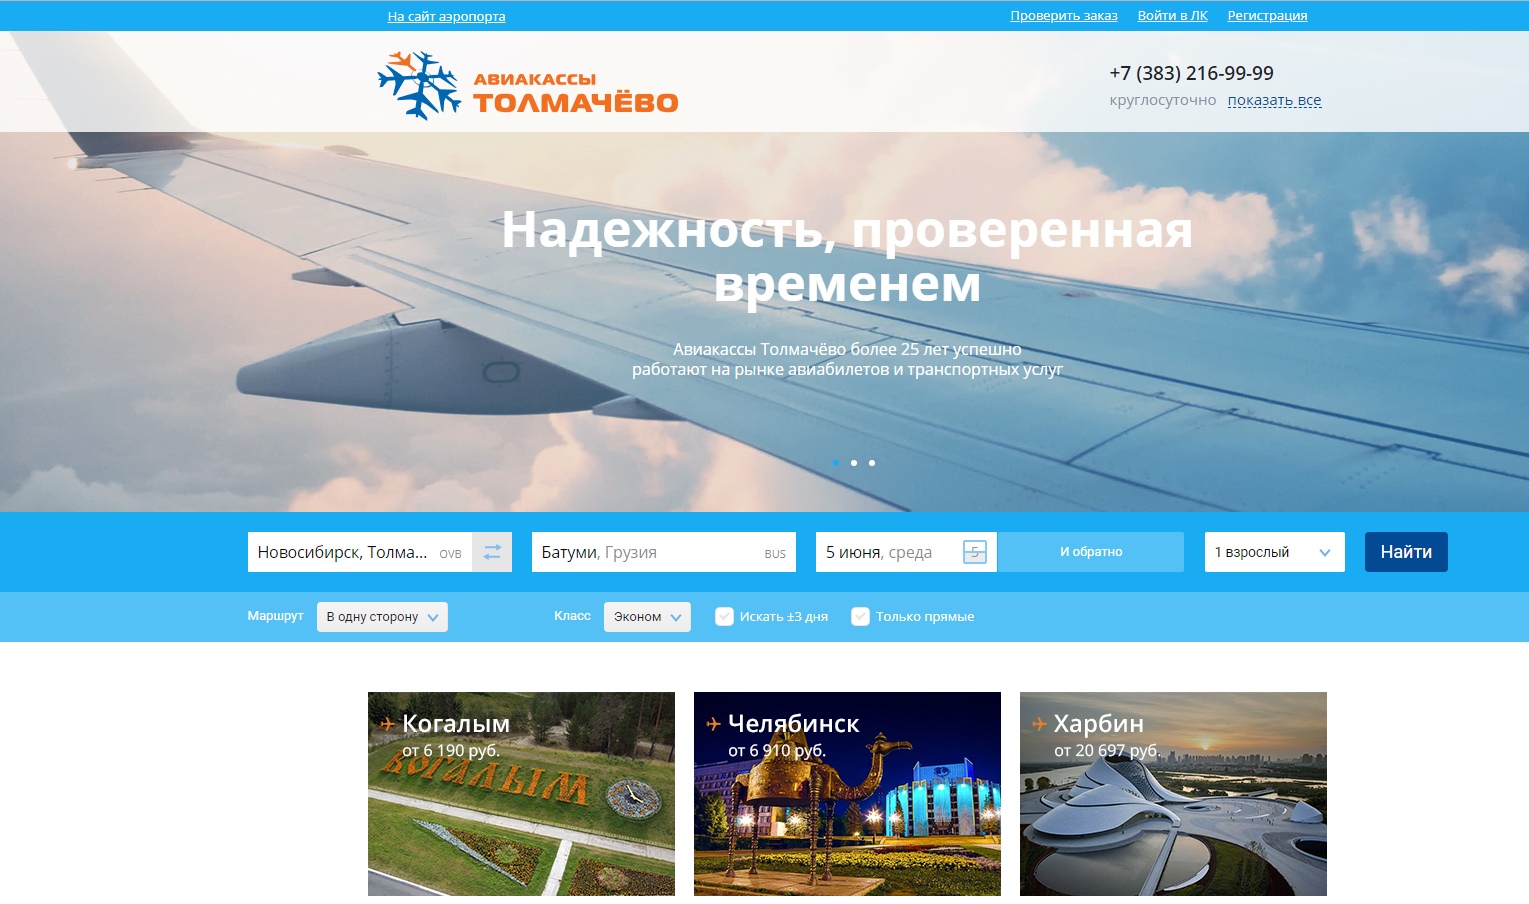 Толмачева аэропорт новосибирск купить билеты. Дизайн сайта авиакомпании. Макет сайта аэропорта. Аэропорт Толмачево.